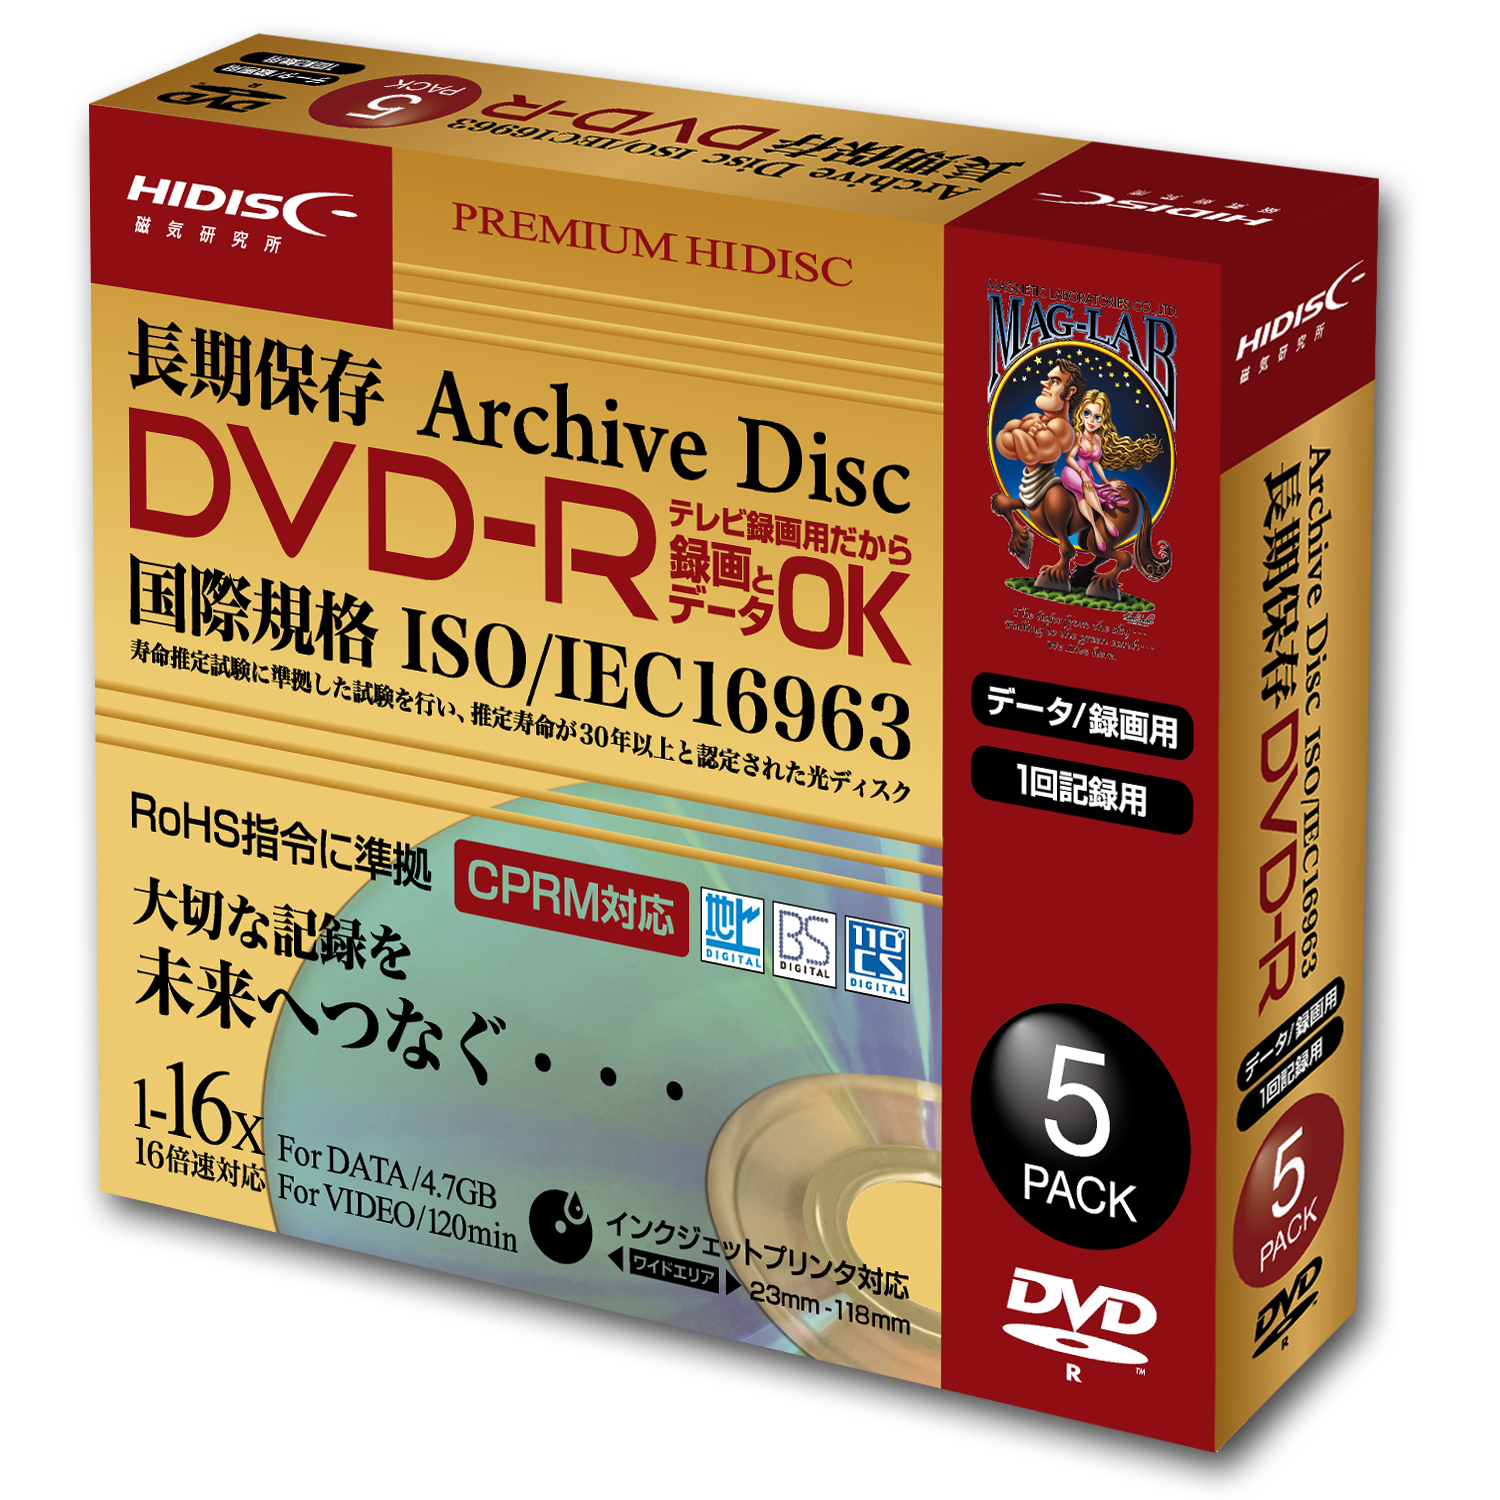 HIDISC 長期保存(推定30年) DVD-R 録画用 120分 16倍速対応 5枚